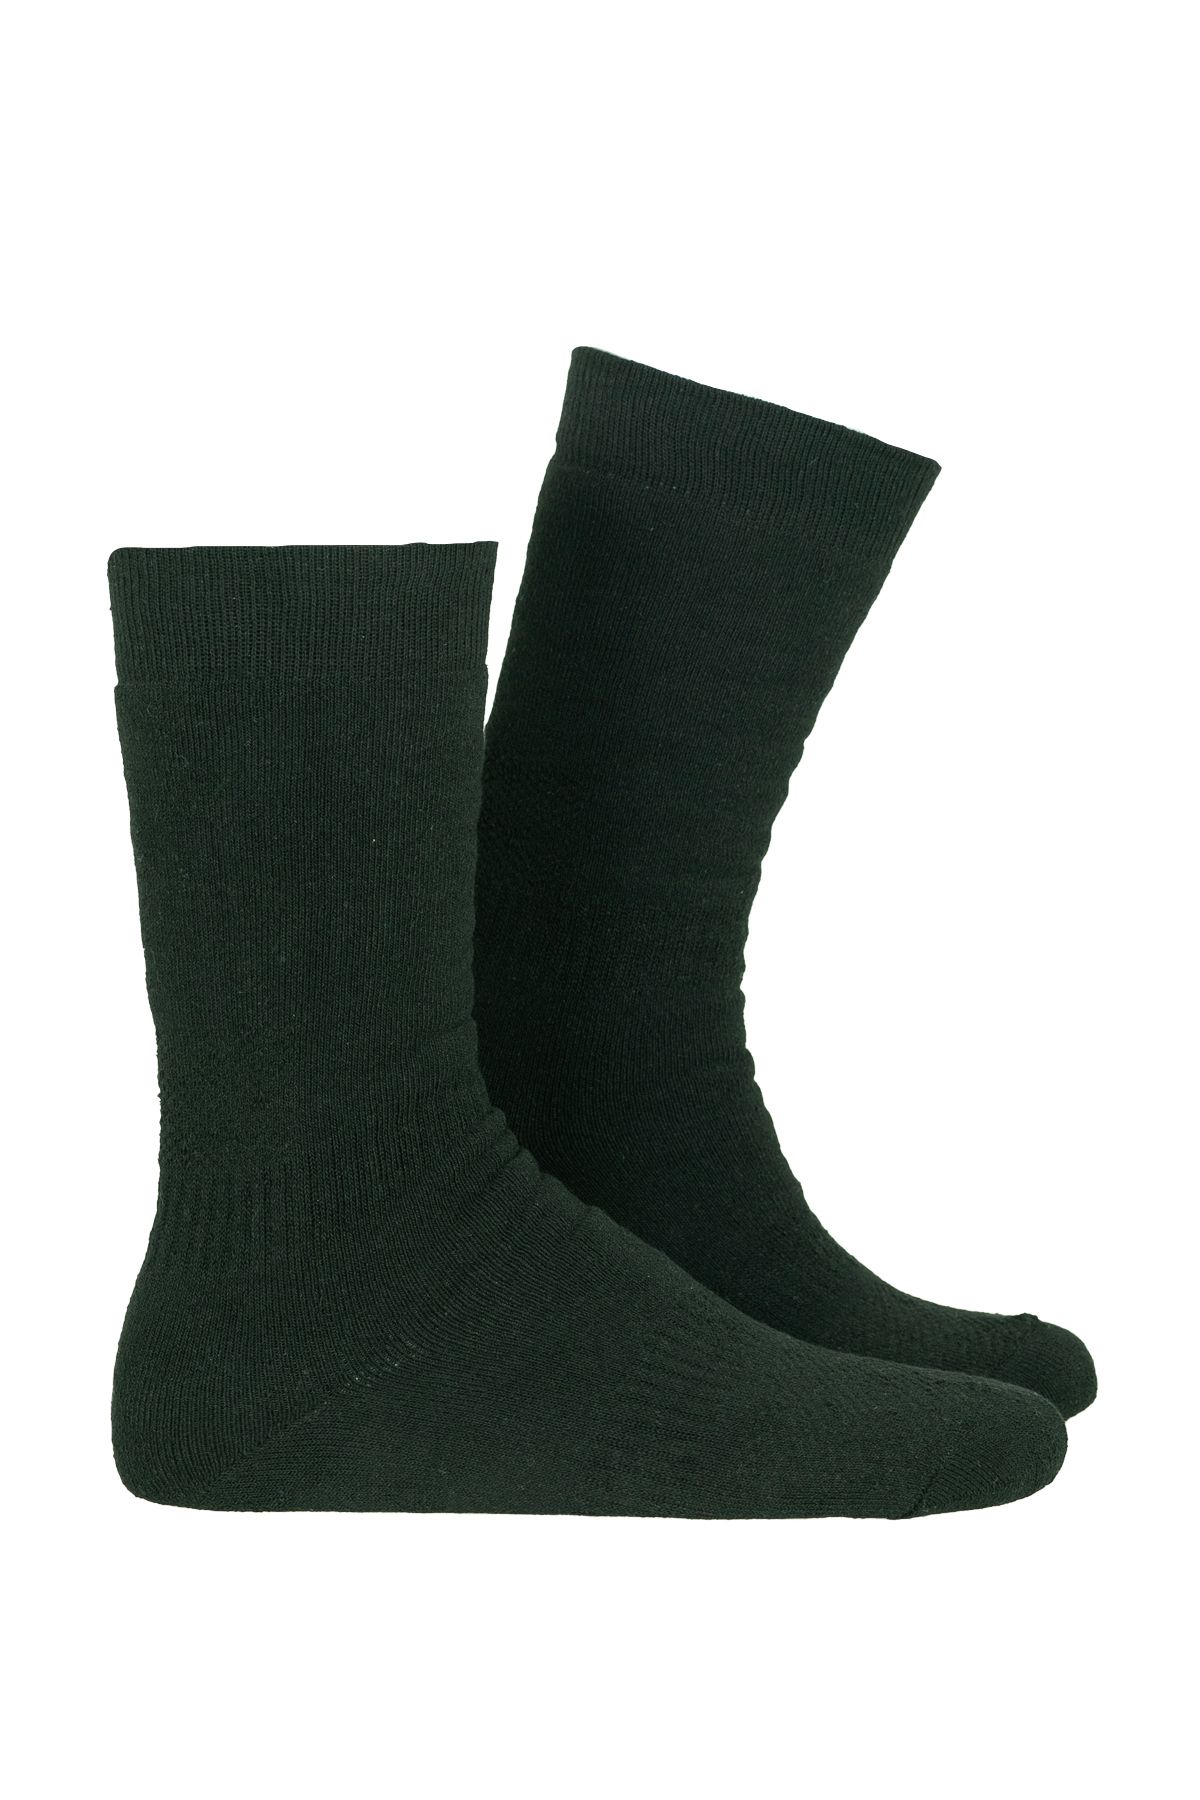 OIL COMPANY Ranger Soft Siyah Kışlık Çorap Unisex